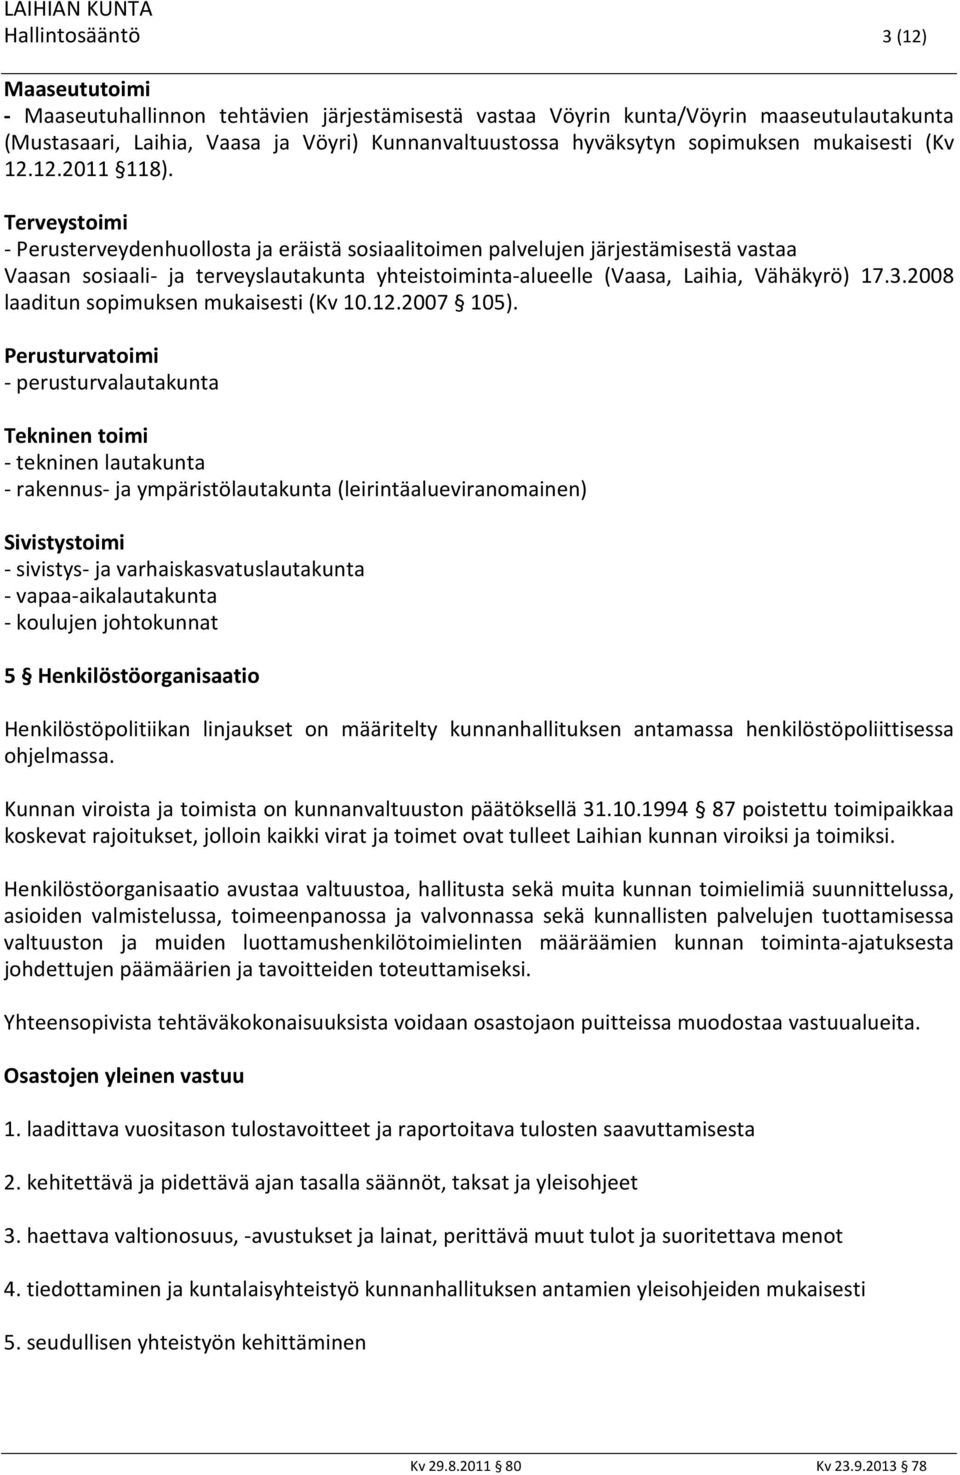 Terveystoimi - Perusterveydenhuollosta ja eräistä sosiaalitoimen palvelujen järjestämisestä vastaa Vaasan sosiaali- ja terveyslautakunta yhteistoiminta-alueelle (Vaasa, Laihia, Vähäkyrö) 17.3.